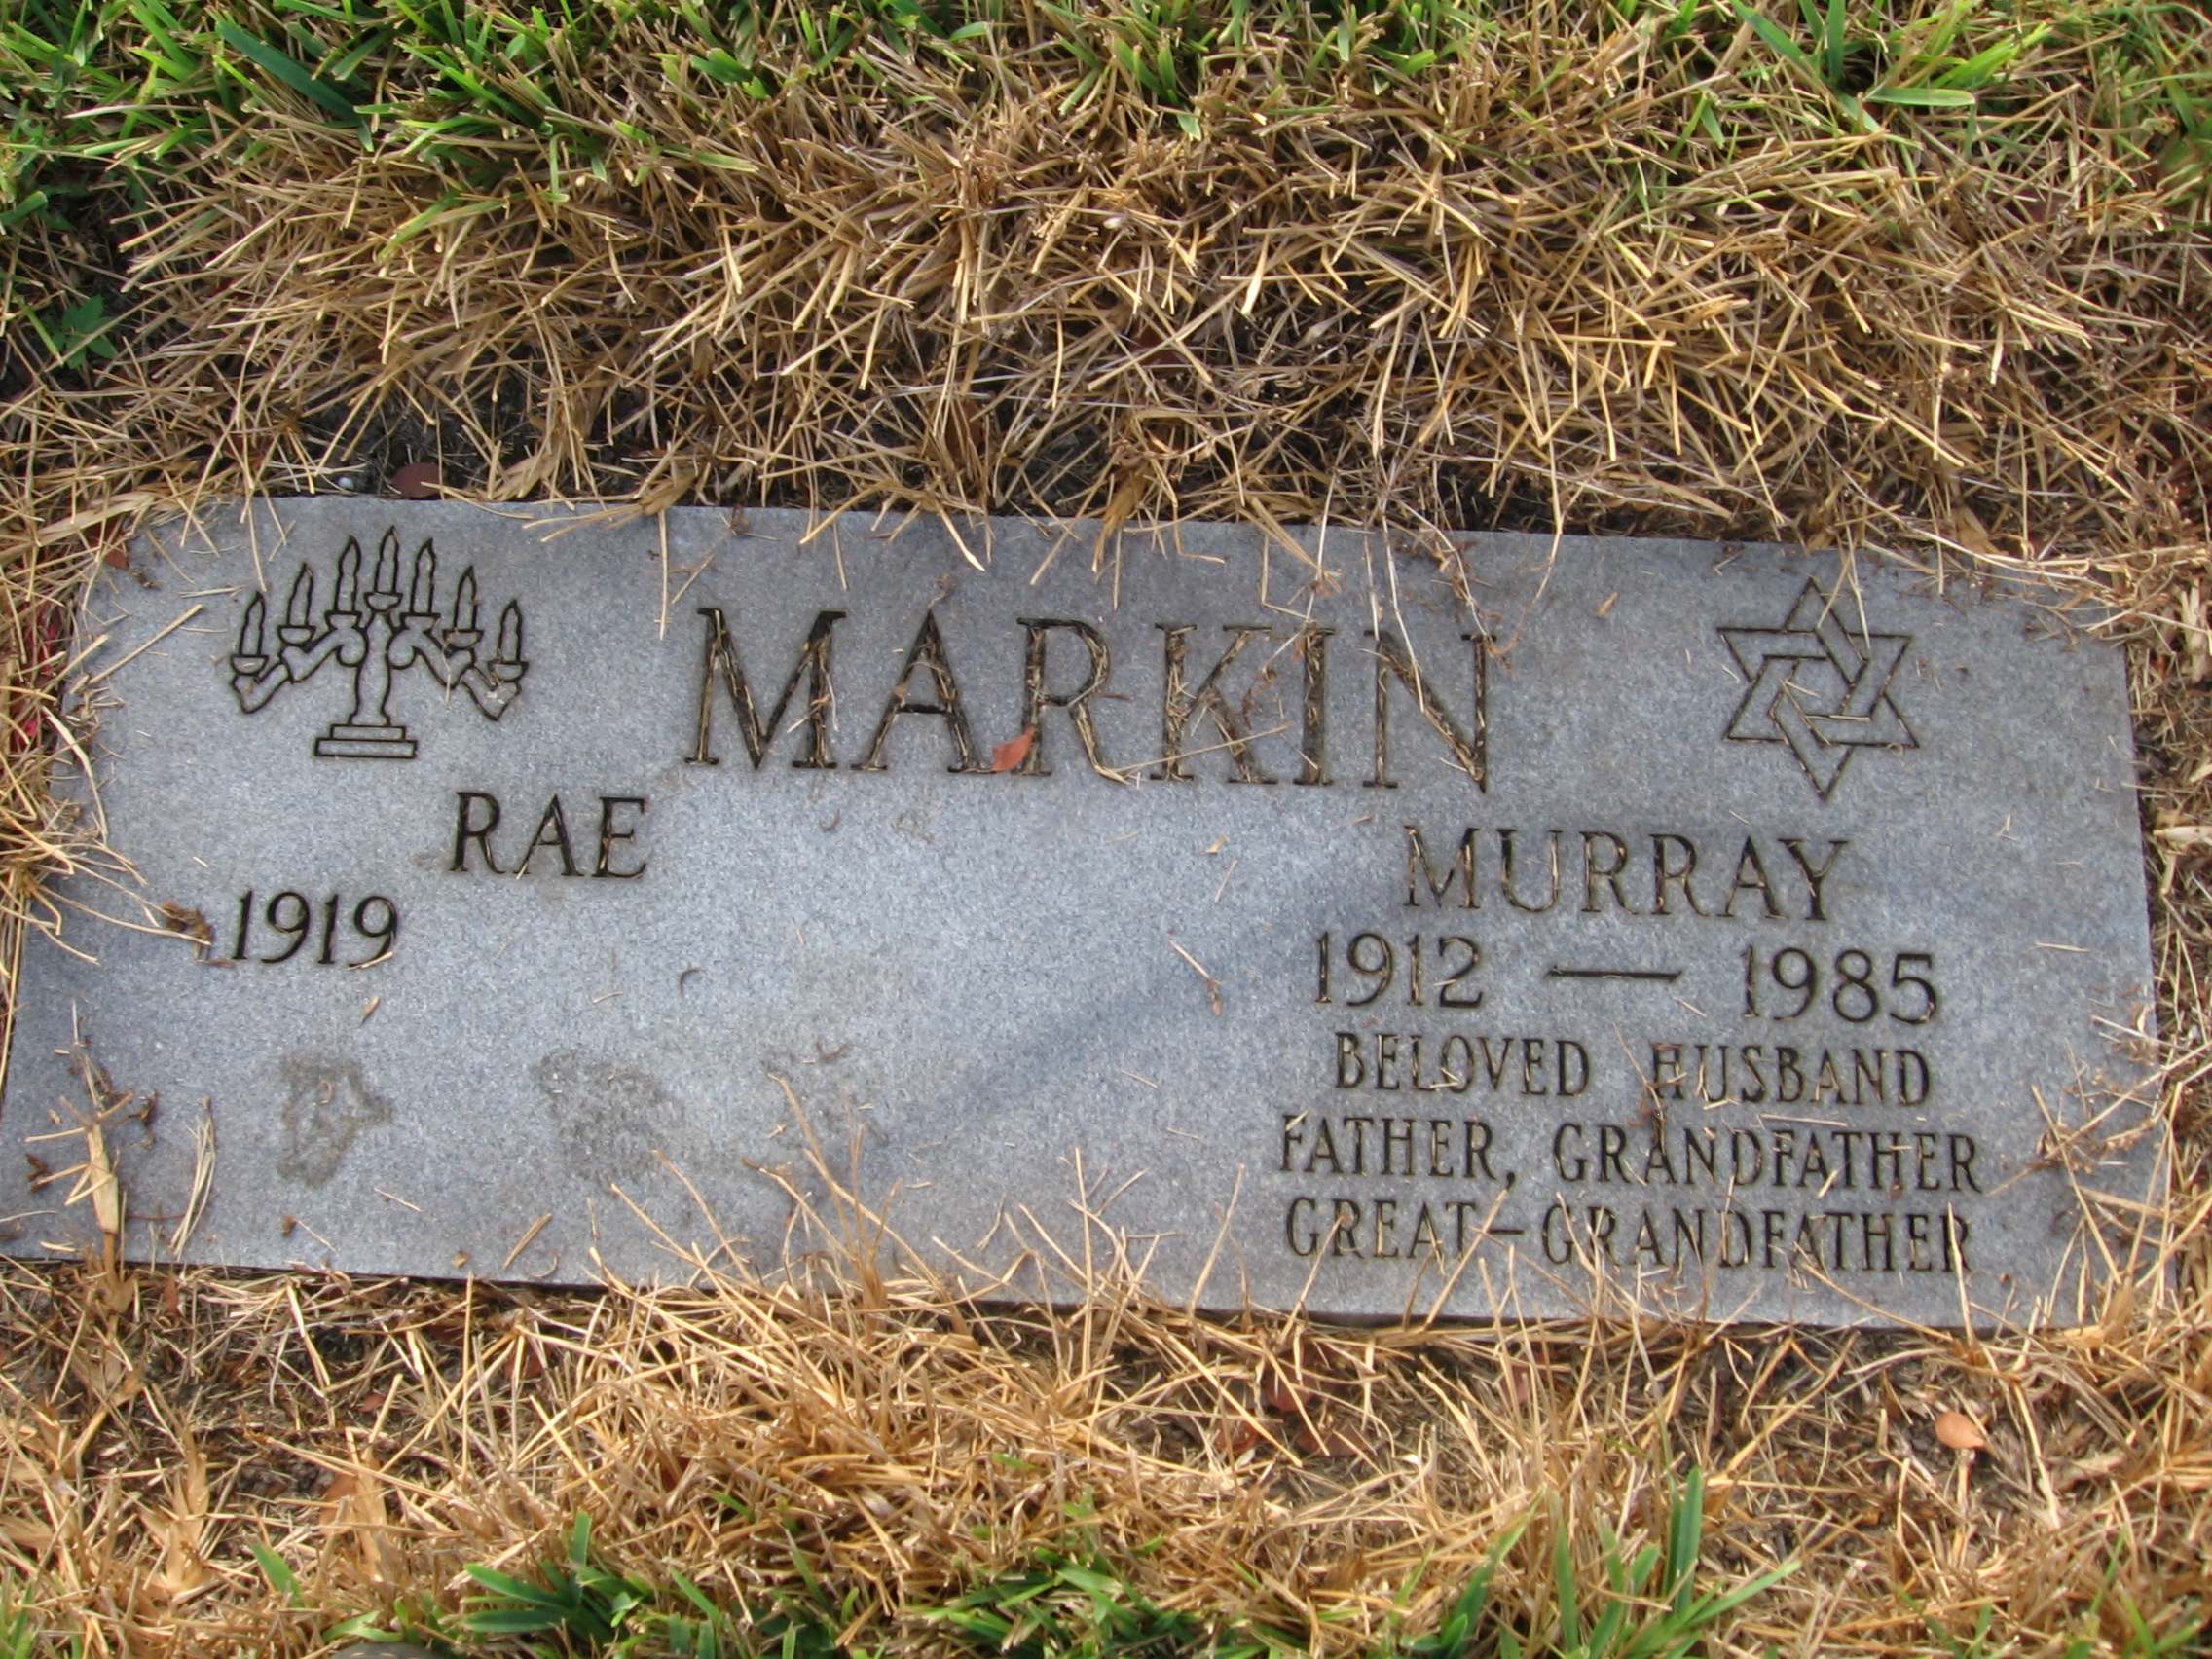 Murray Markin